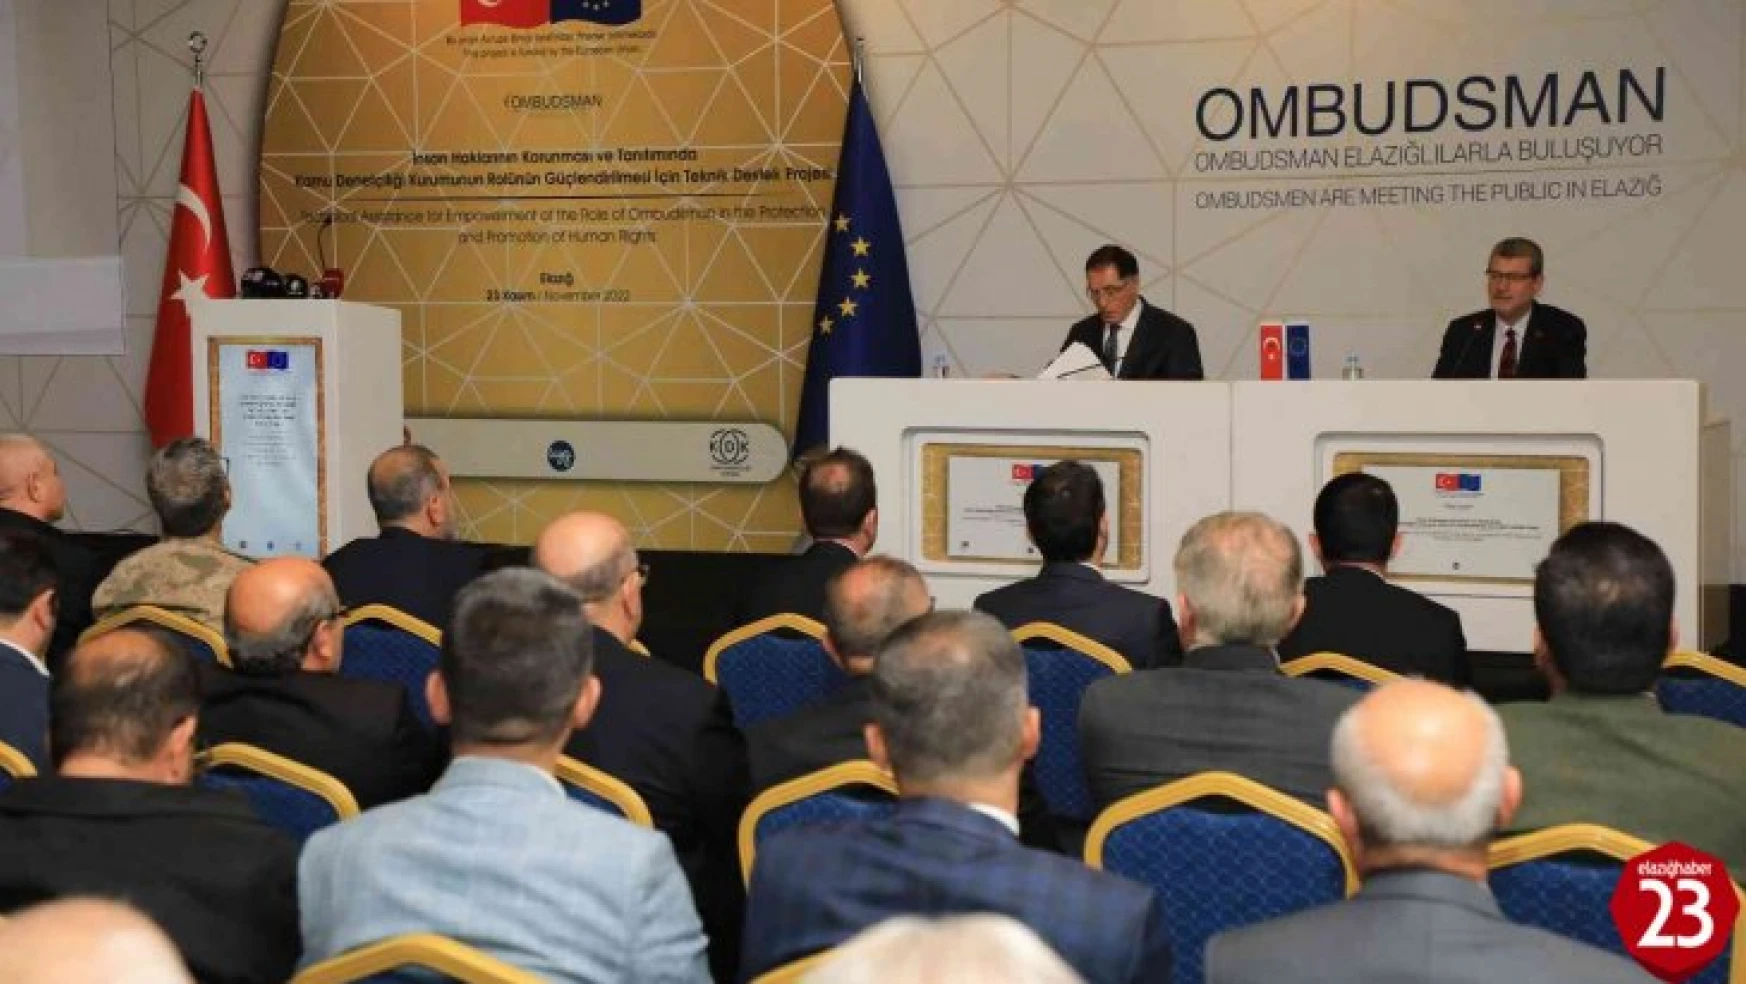 Ombudsman Malkoç Elazığlılara Sistemin Tarihini Anlattı